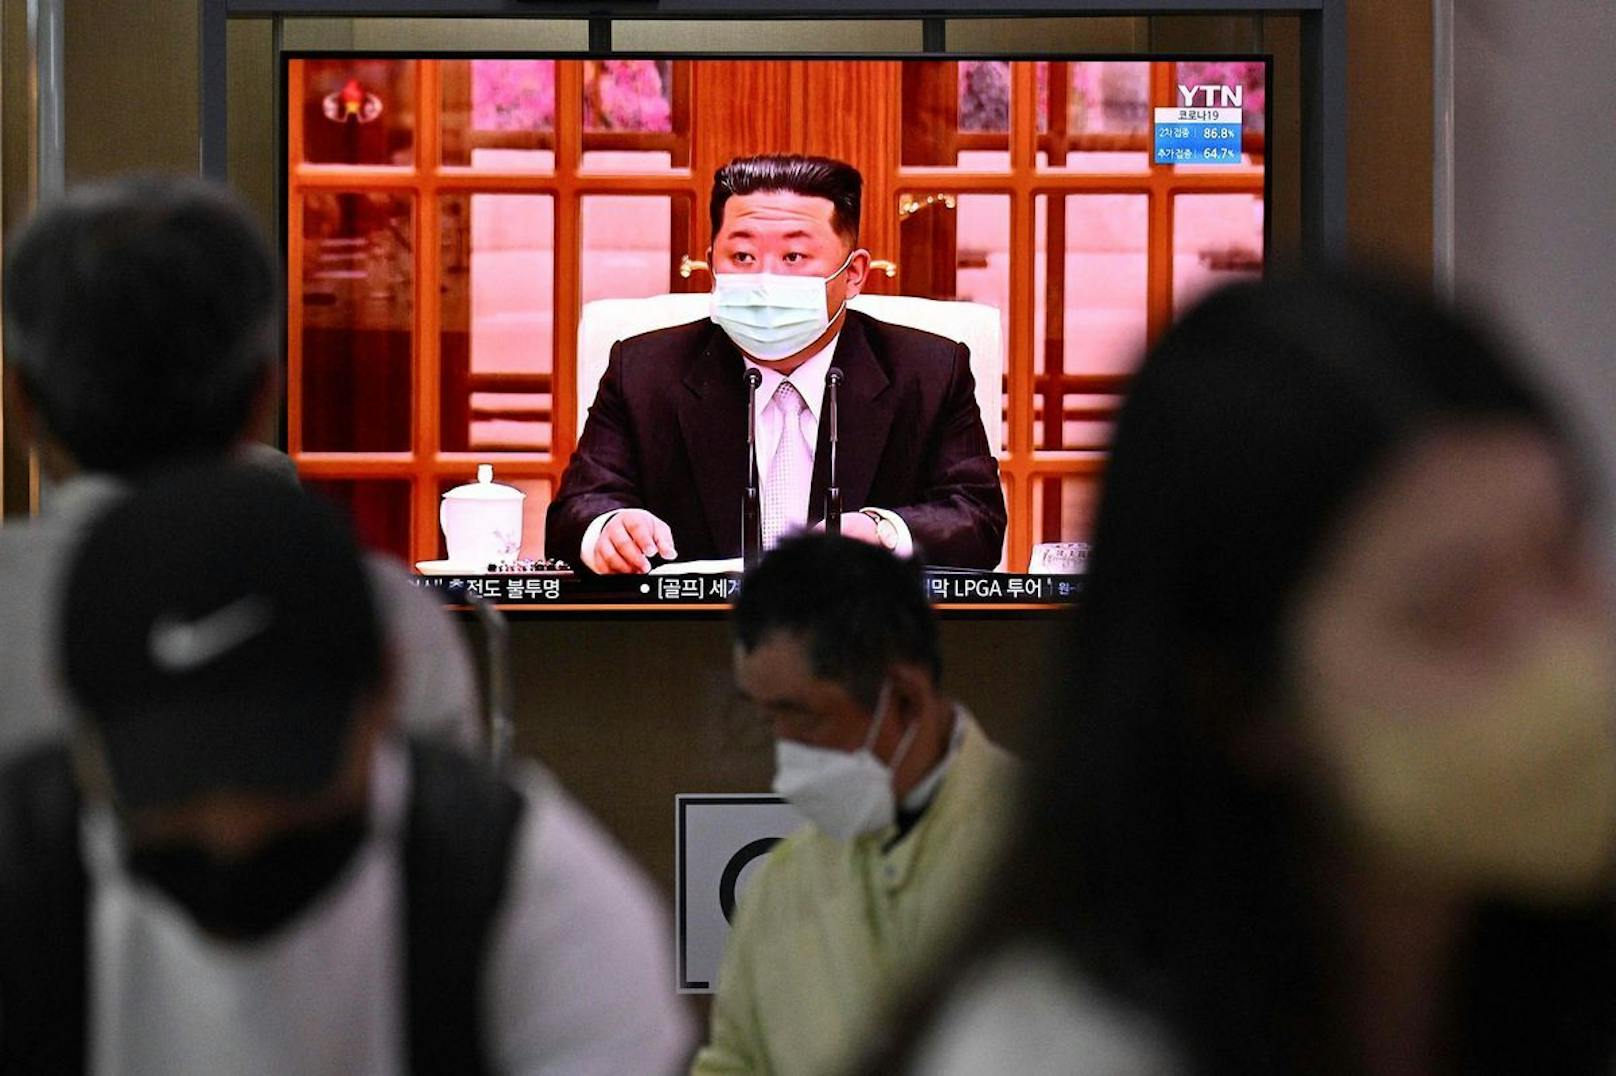 Mehr als zwei Jahre nach dem Beginn der Corona-Krise spitzt sich die pandemische Lage offenbar auch im Land von Kim Jong Un.